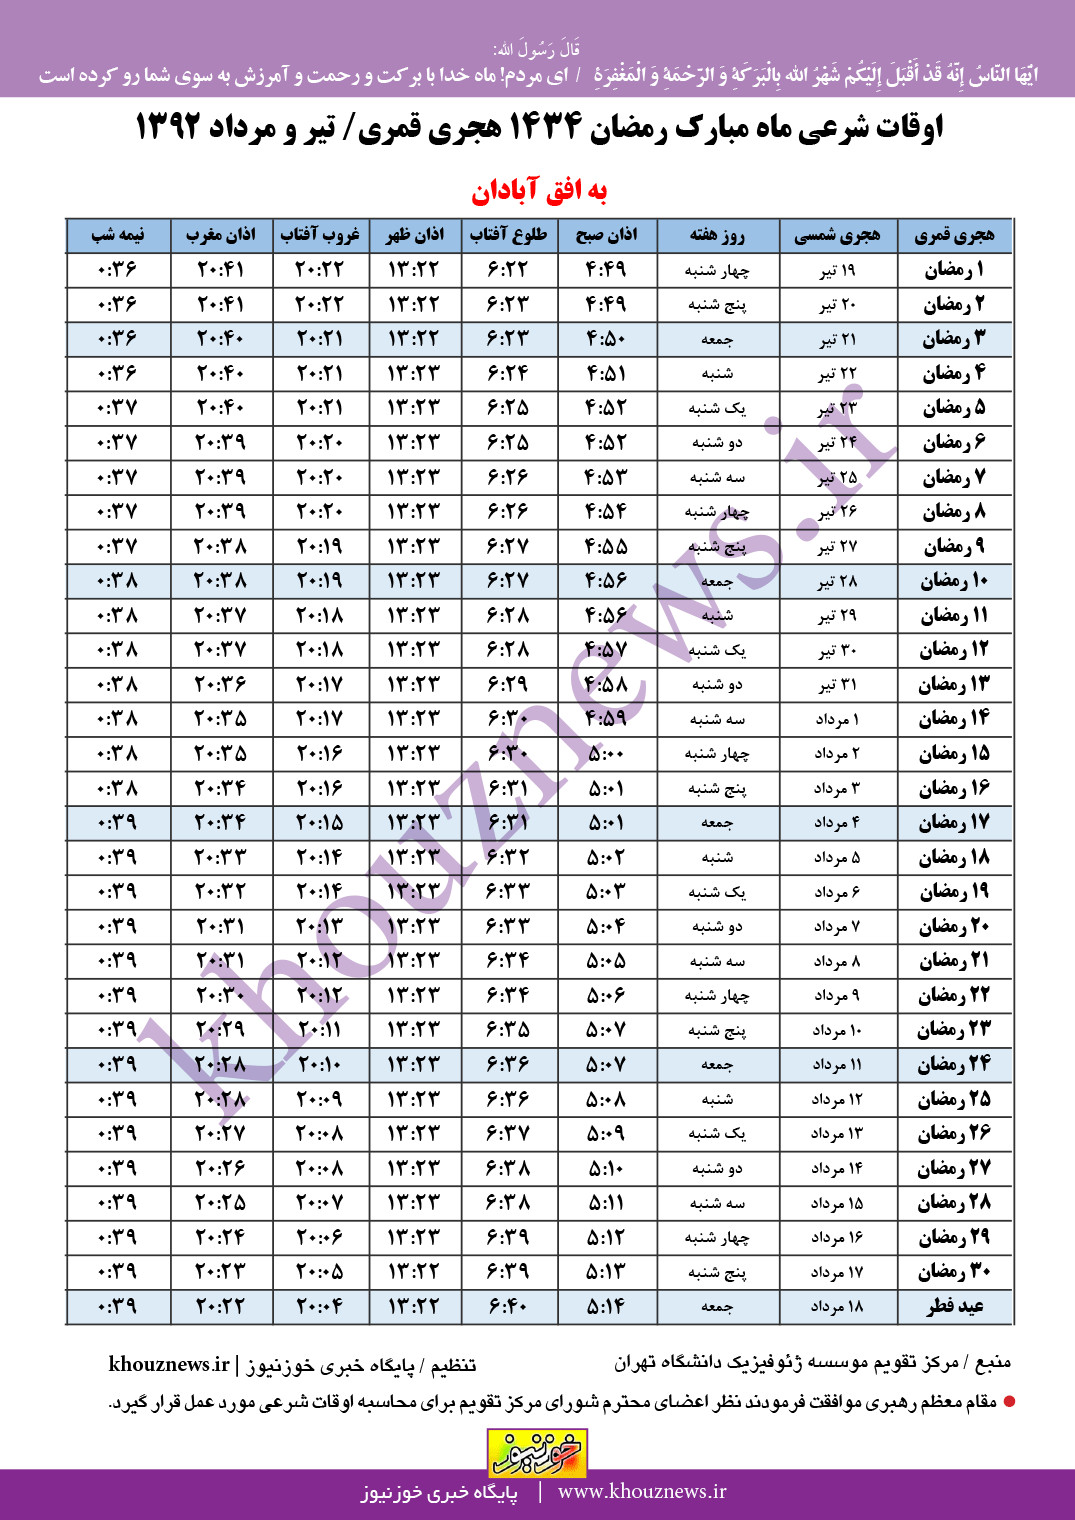 اوقات شرعی ماه رمضان 1434/  1392 به افق شهرستان آبادان (آبادان، اروندکنار، چونبده و قفاص)